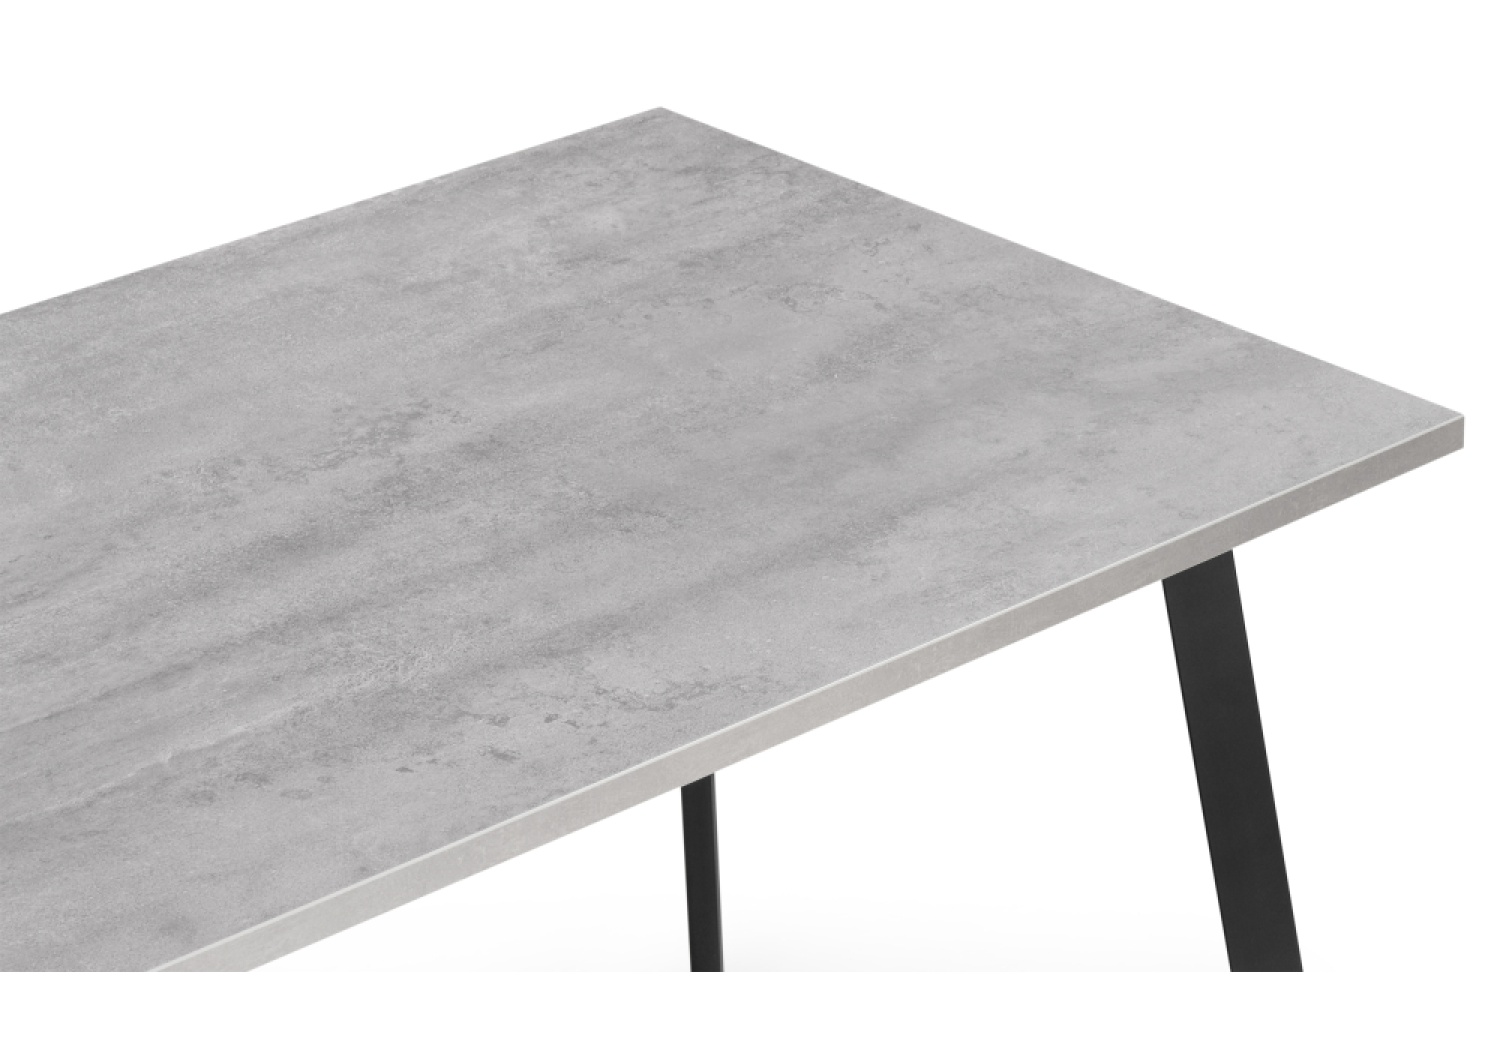 Деревянный стол Тринити Лофт 120х80х75 25 мм бетон / черный матовый